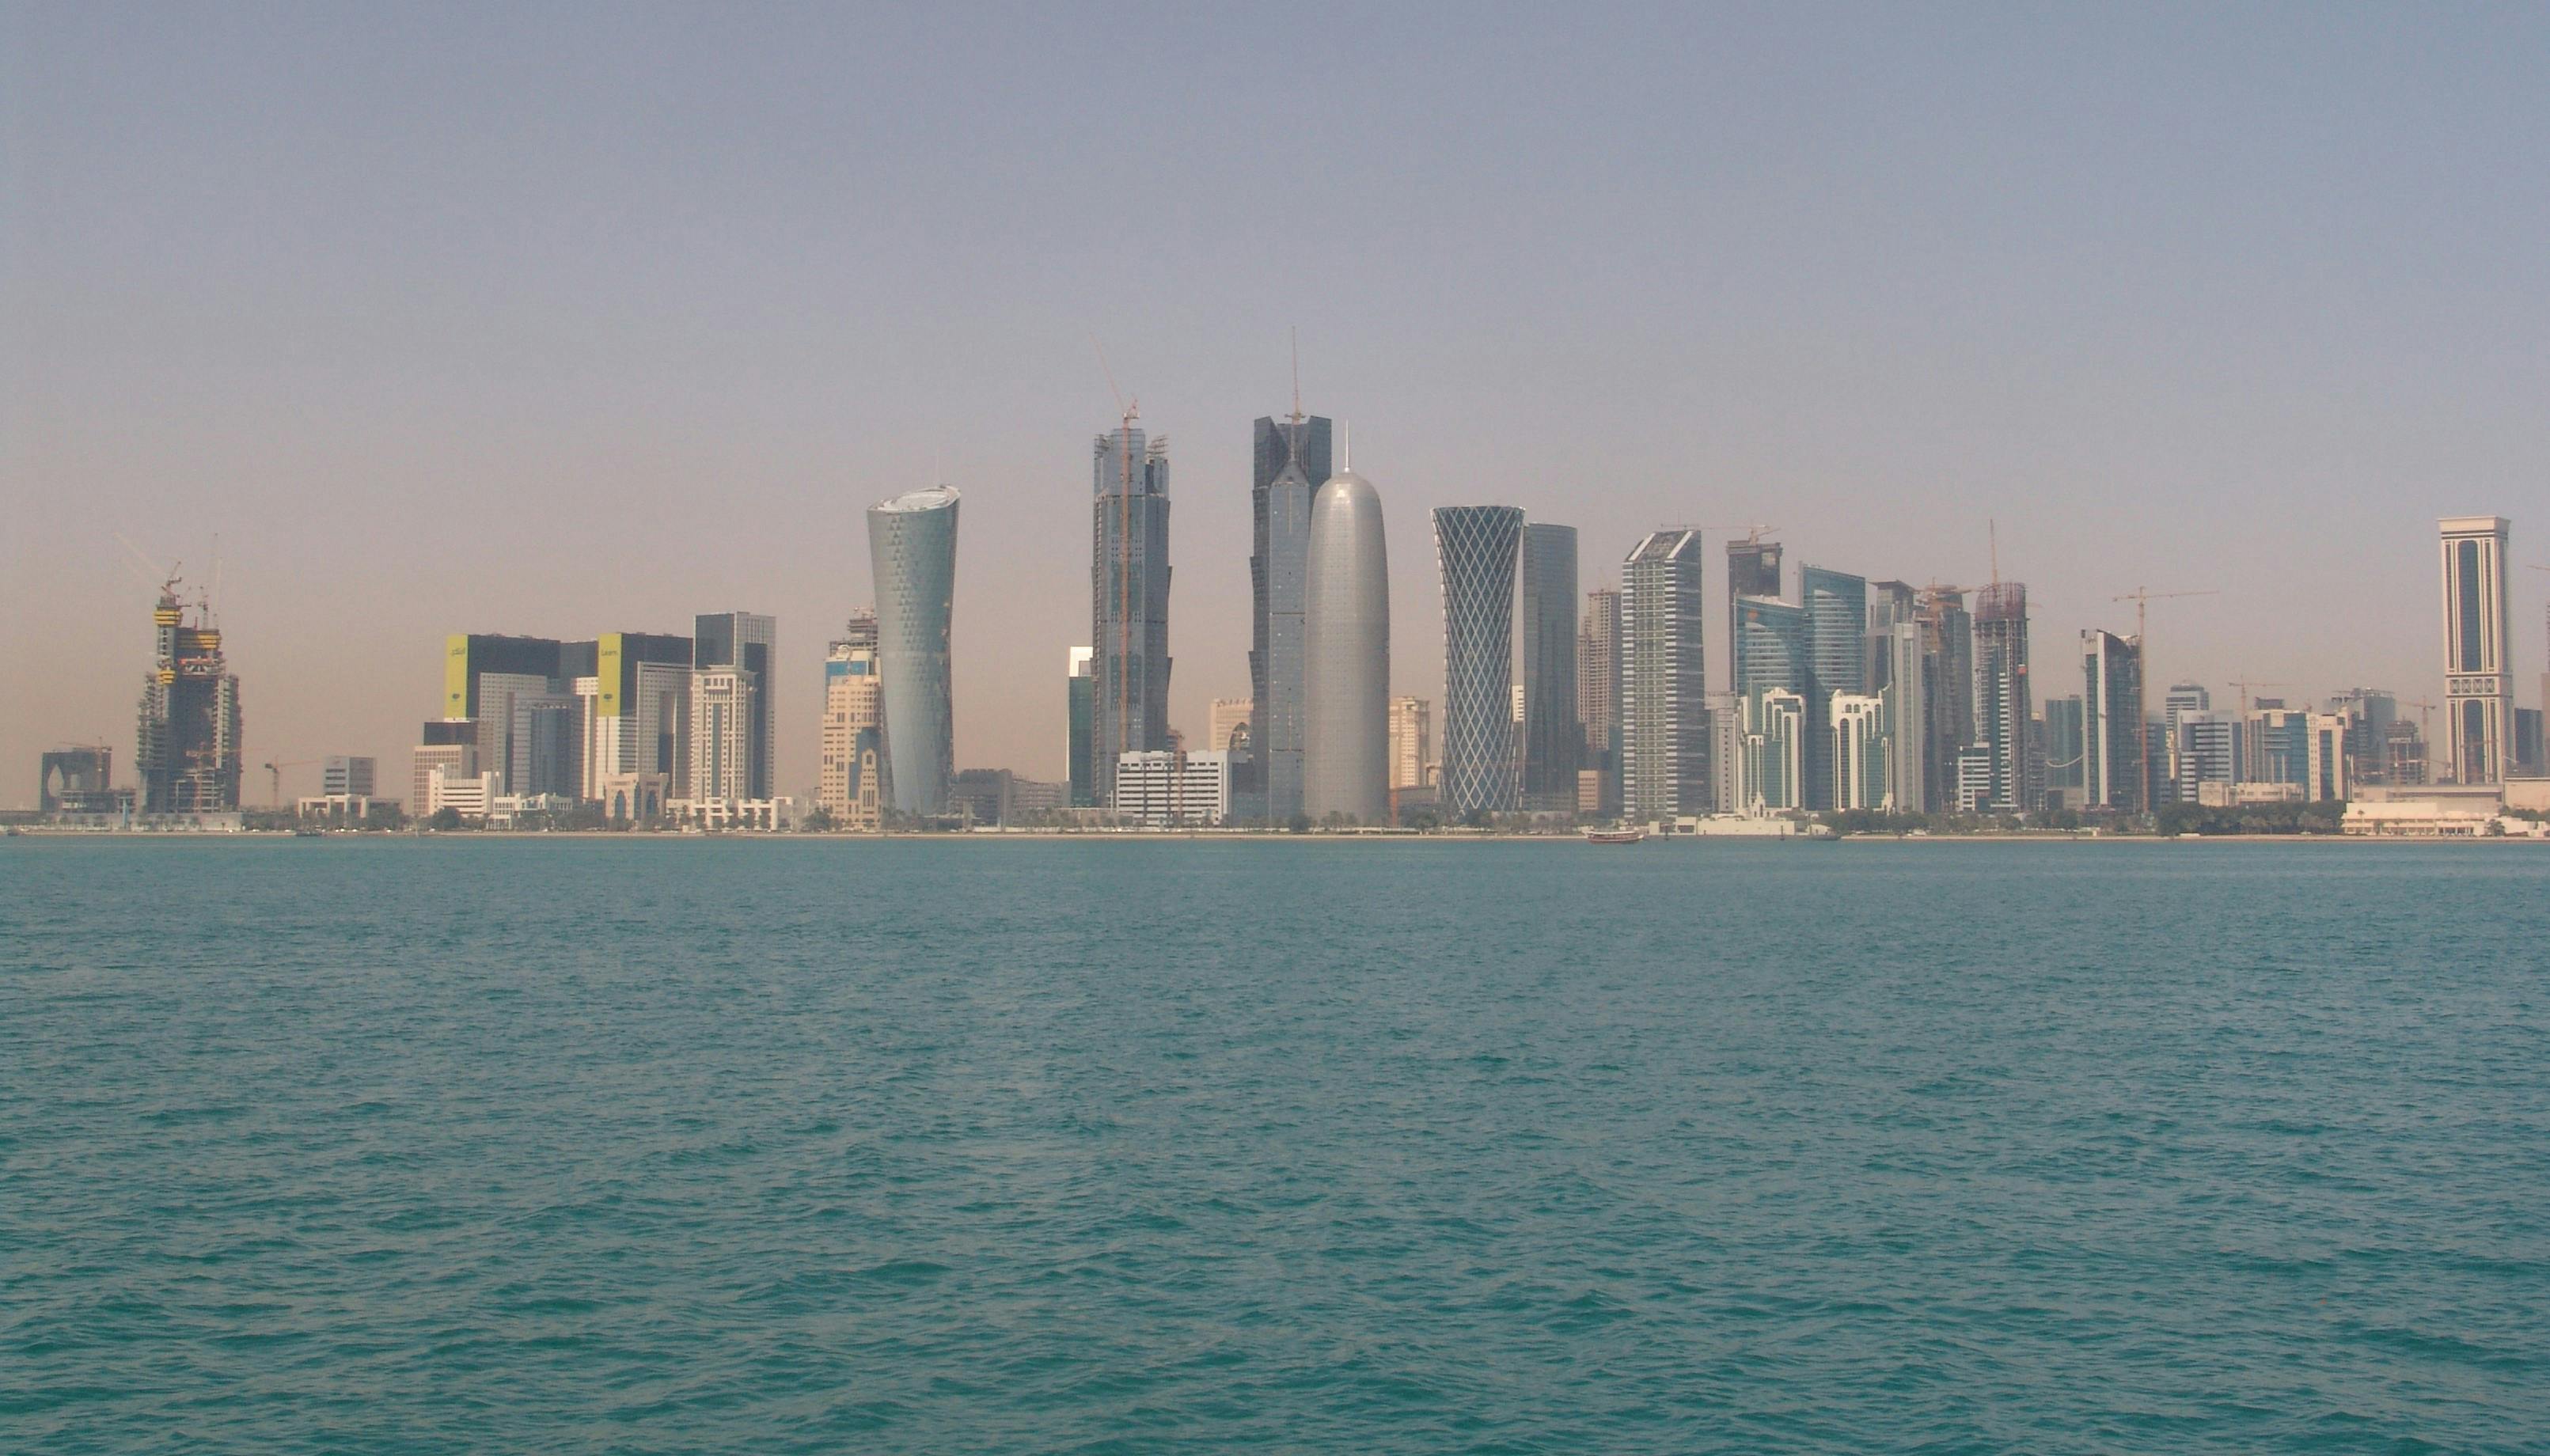 Stadtrundfahrt-Vergnügen in Doha